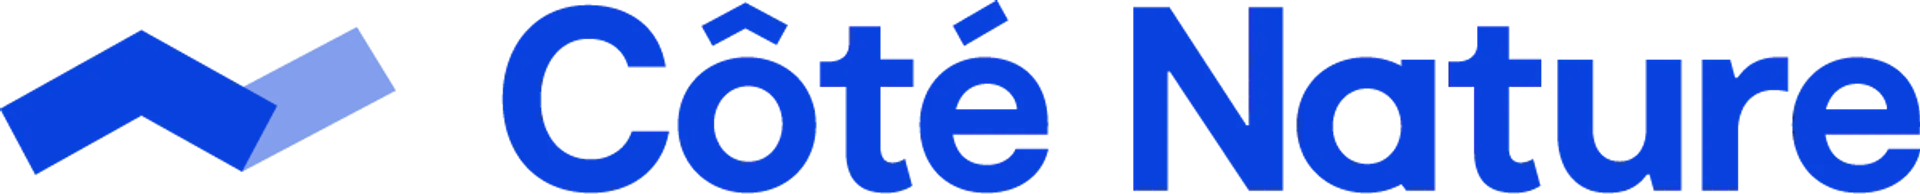 CÔTÉ NATURE logo du catalogue